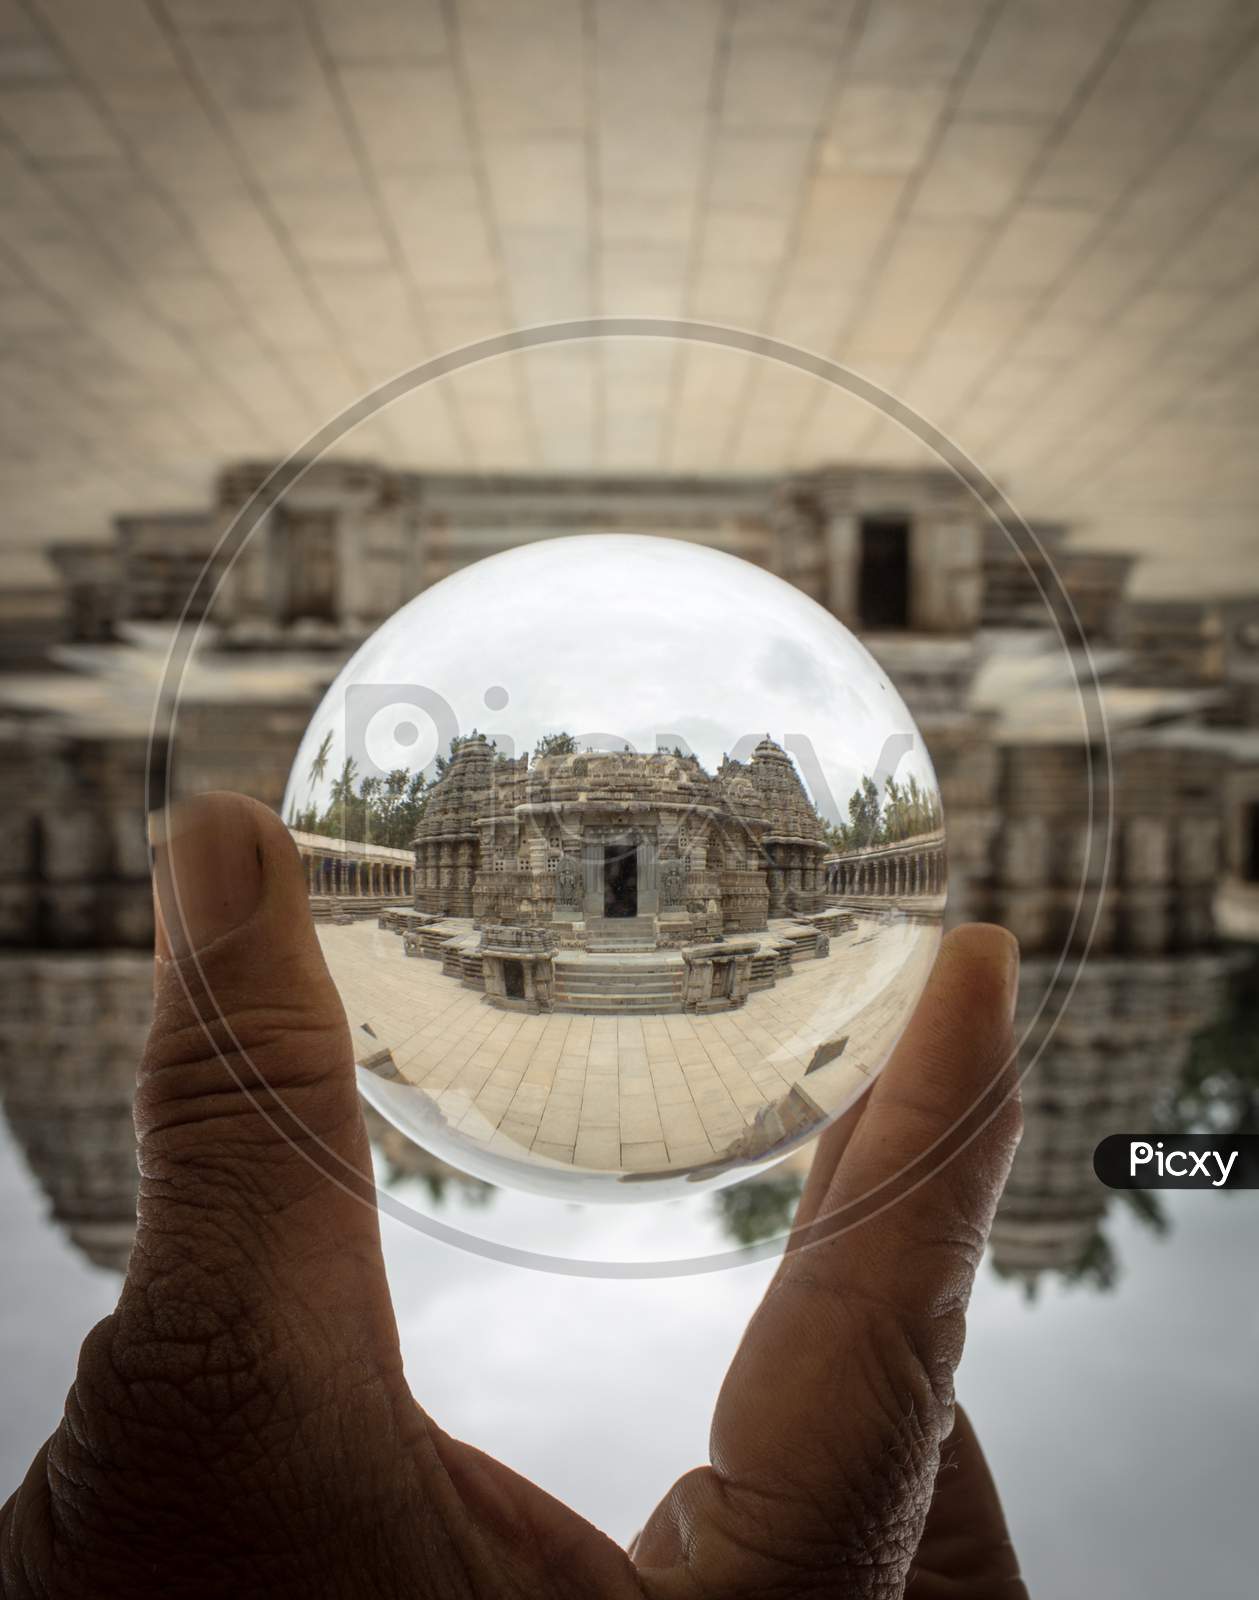 Hoysala temple seen through Lens Crystal ball at Somanathapura/Karnataka/India.